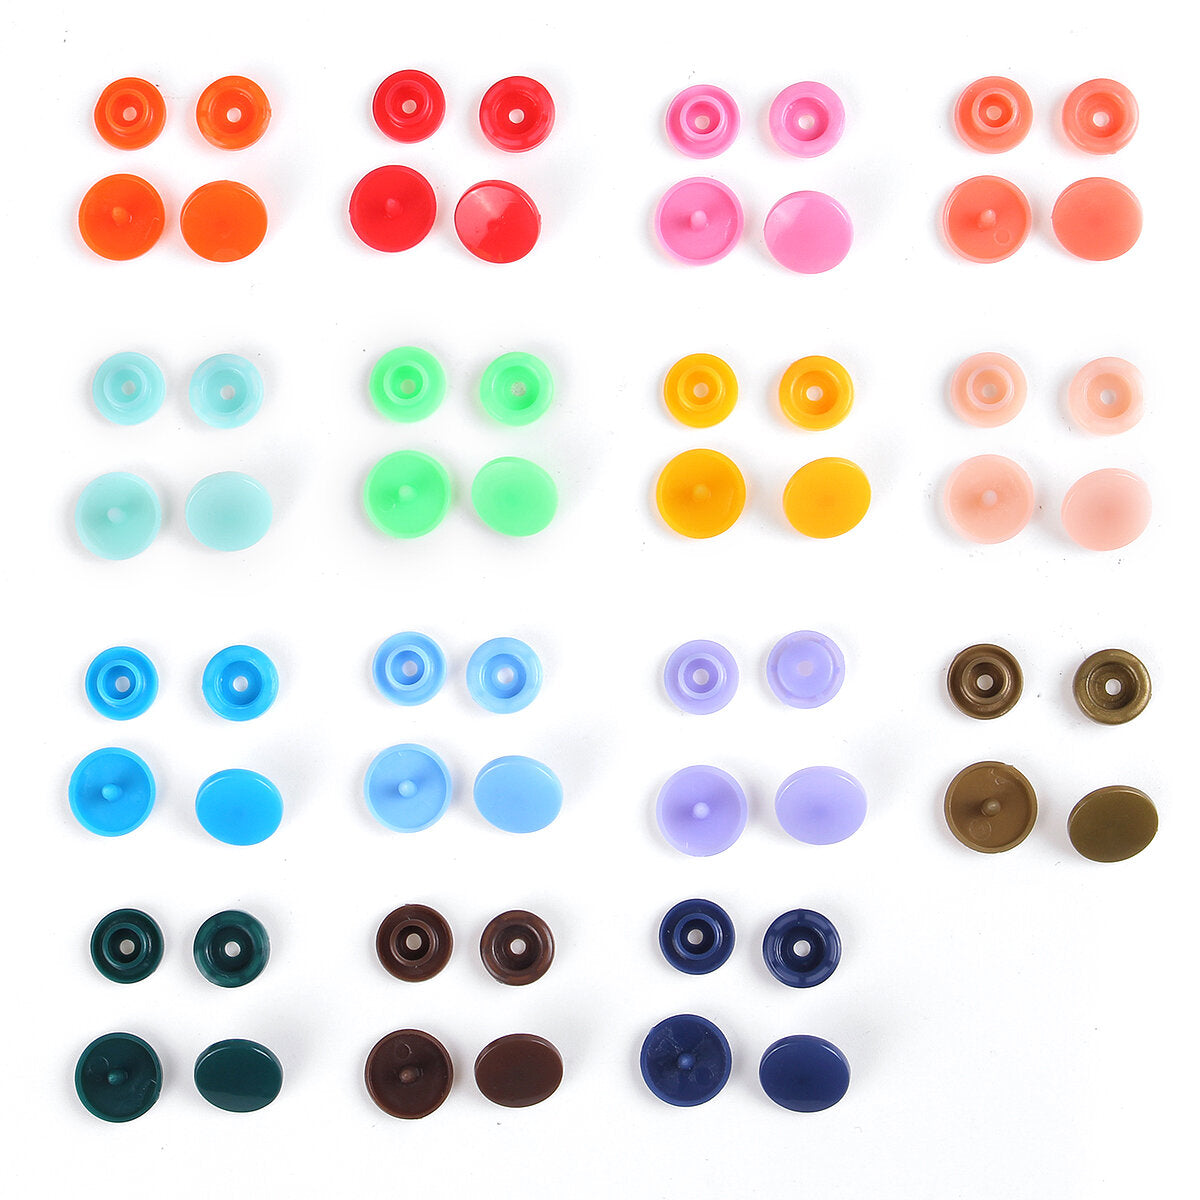 150 stuks / 360 stuks hars plastic knoppen (15/24 kleuren) + 1 set druk tang